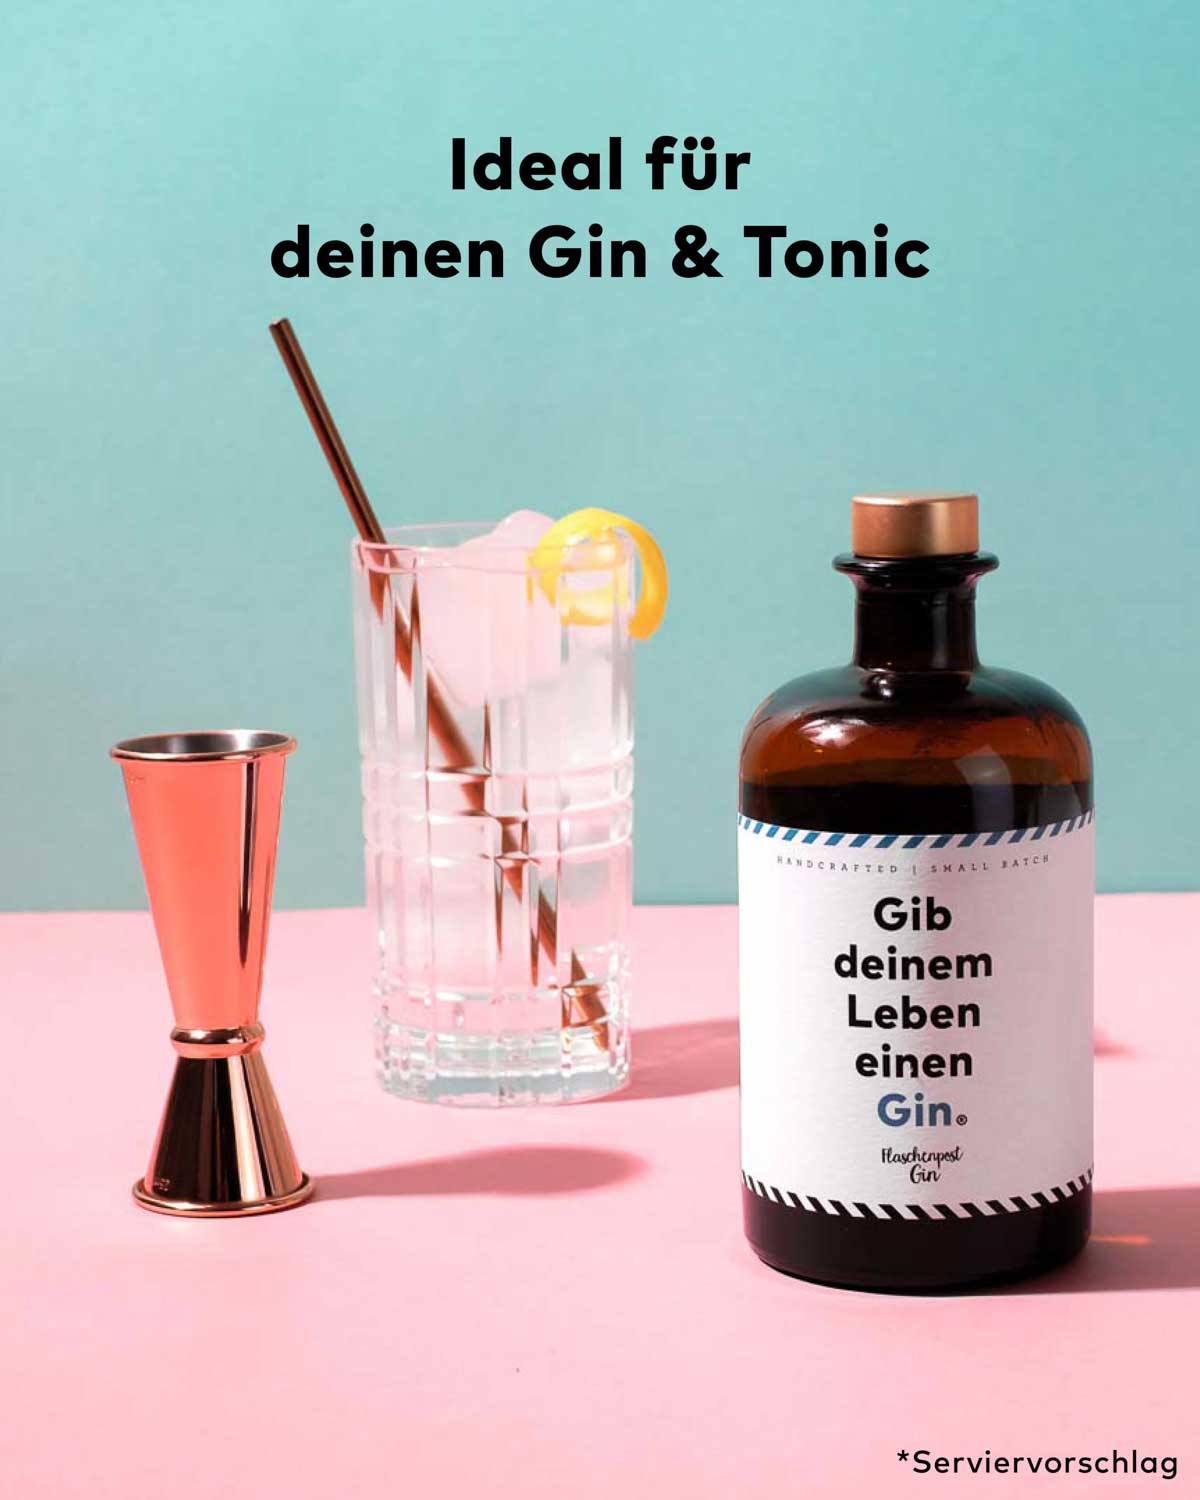 Unser Flaschenpost Gin "Gib deinem Leben einen Gin" eignet sich ideal als Basis für deinen nächsten Gin und Tonic. 